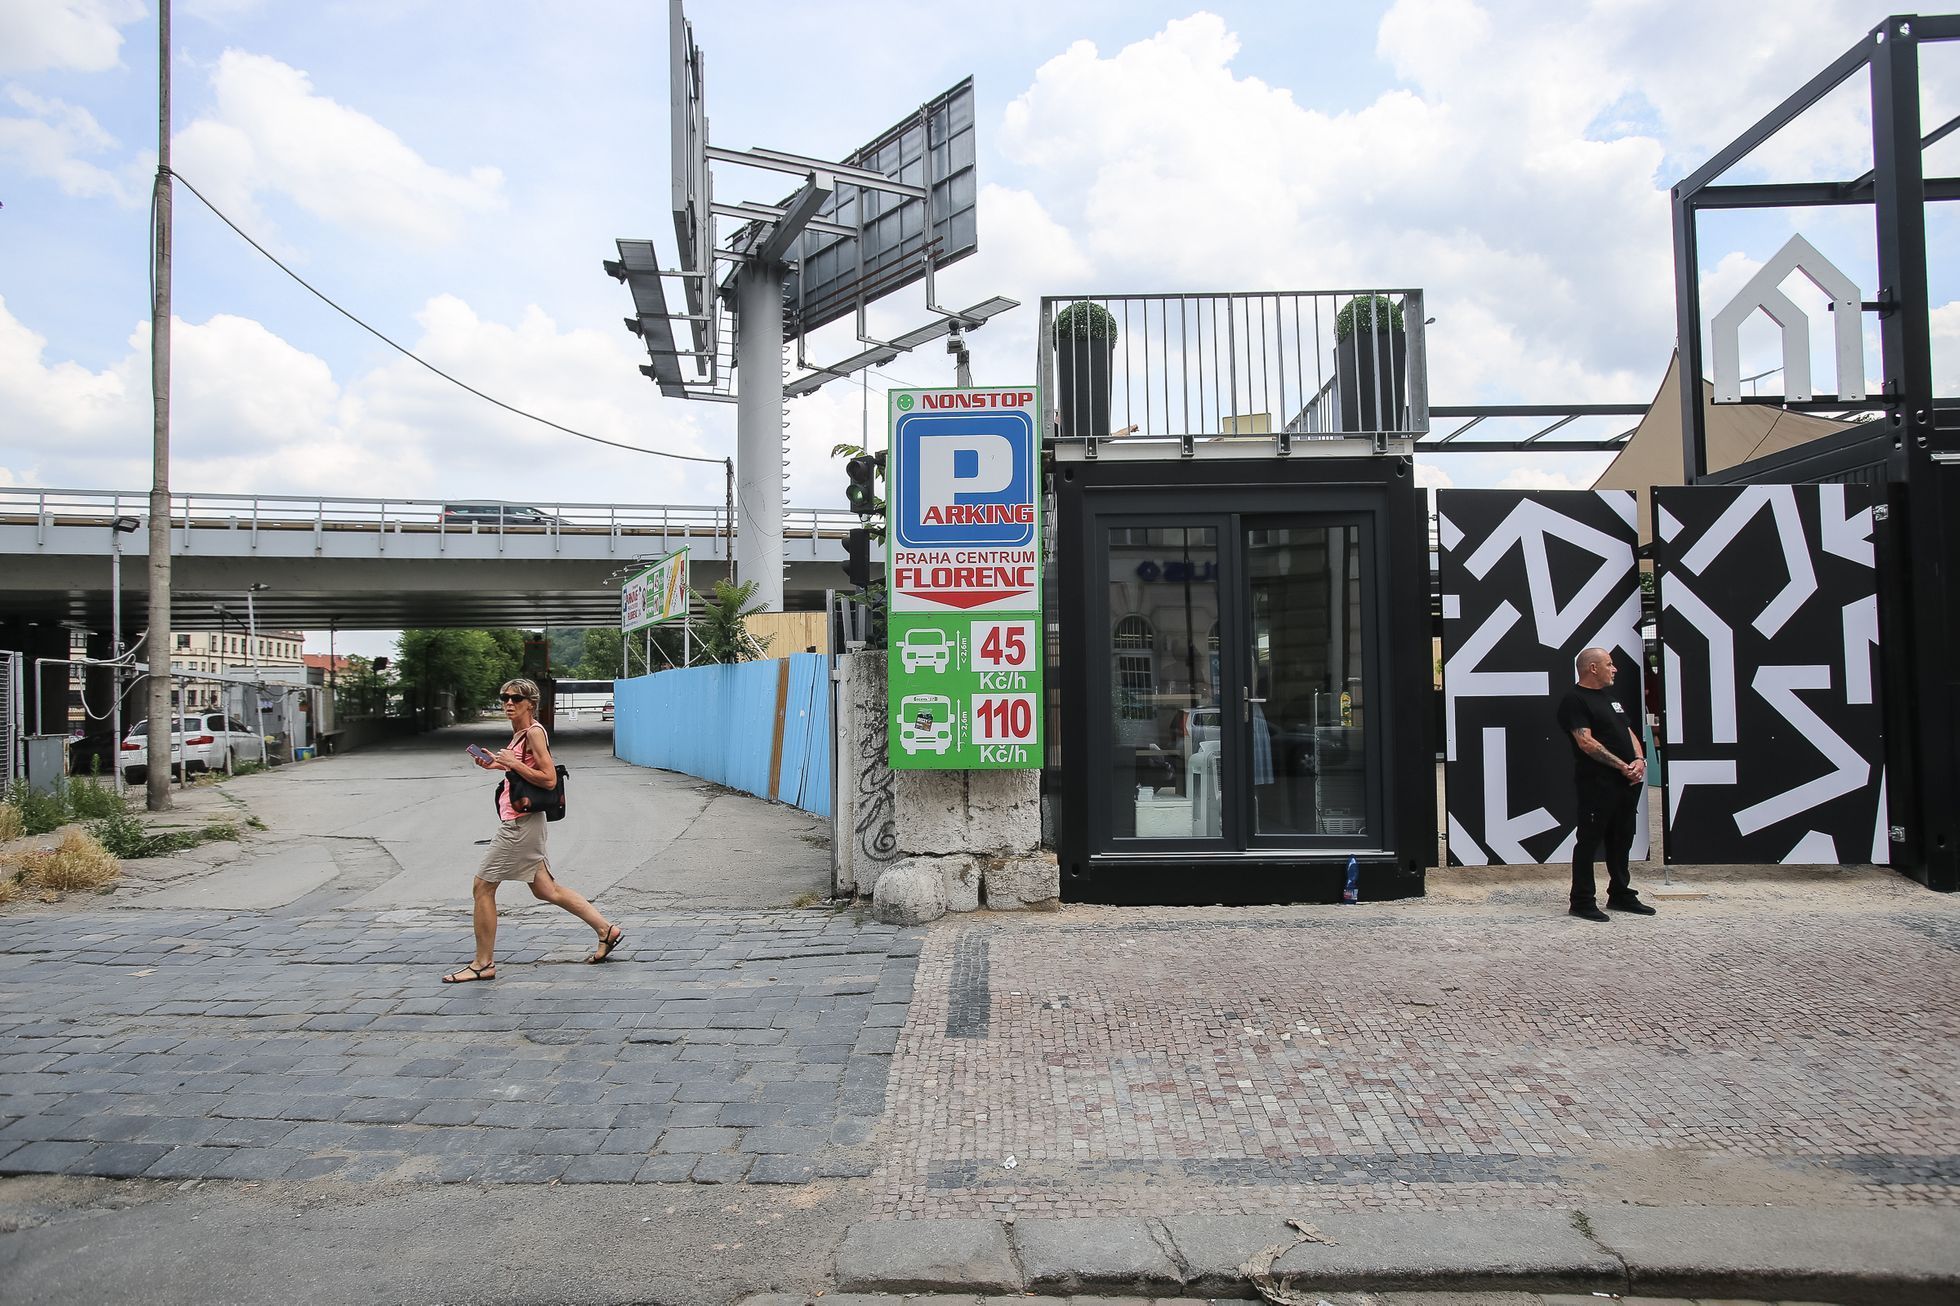 Pop-up tržnice Manifesto složená z kontejnerů v Praze v ulici Na Florenci